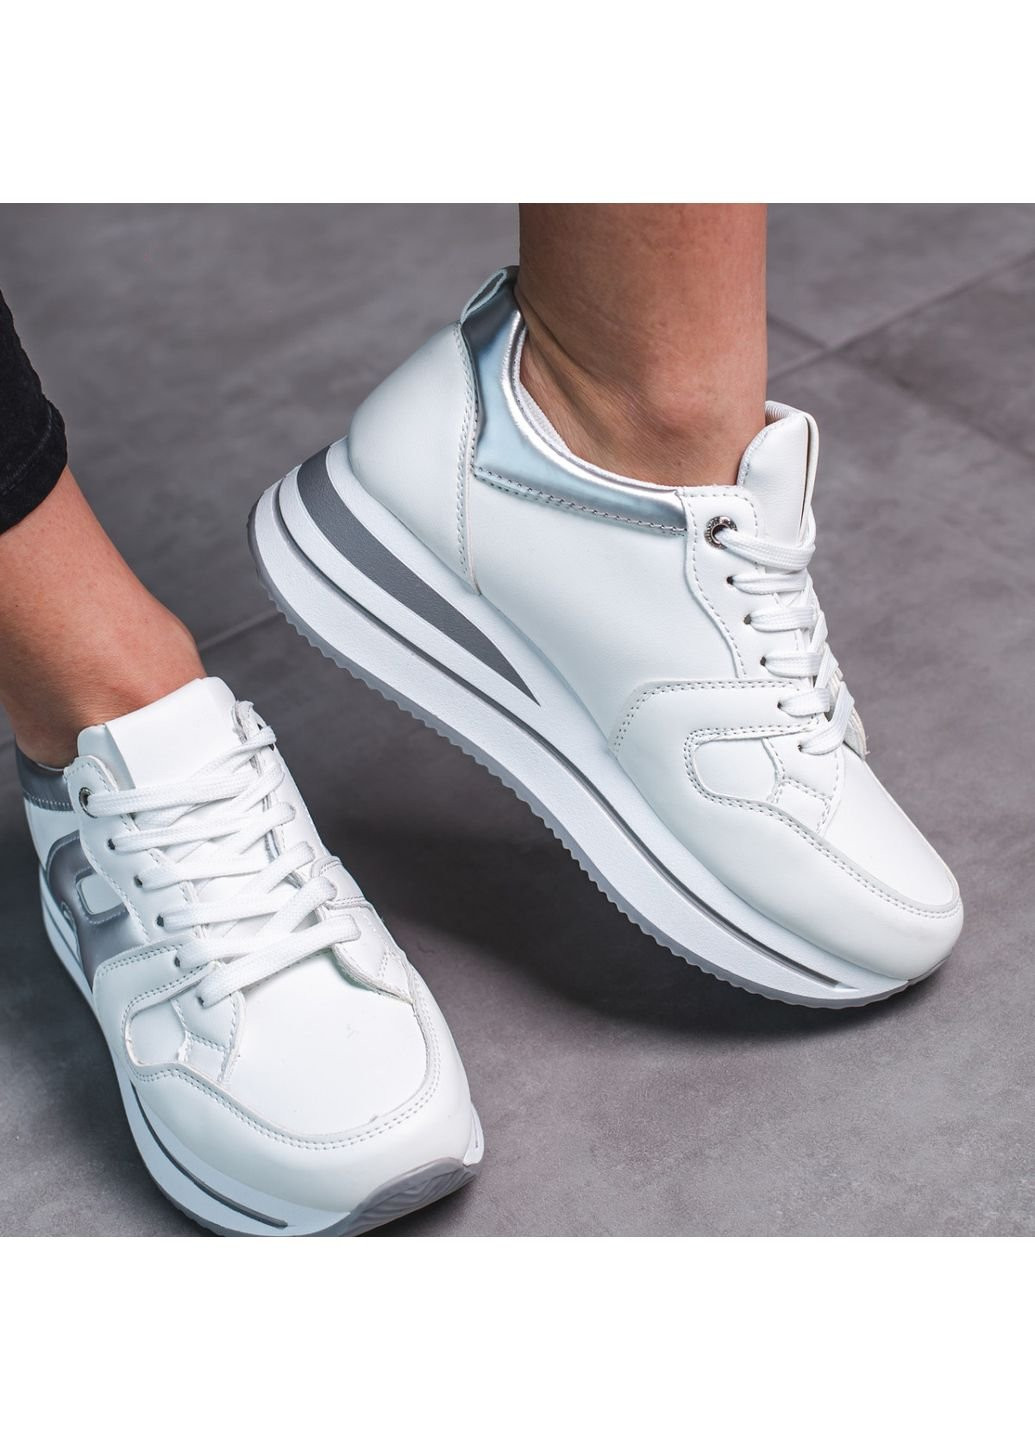 Білі осінні кросівки жіночі grand 3506 39 24,5 см білий Fashion